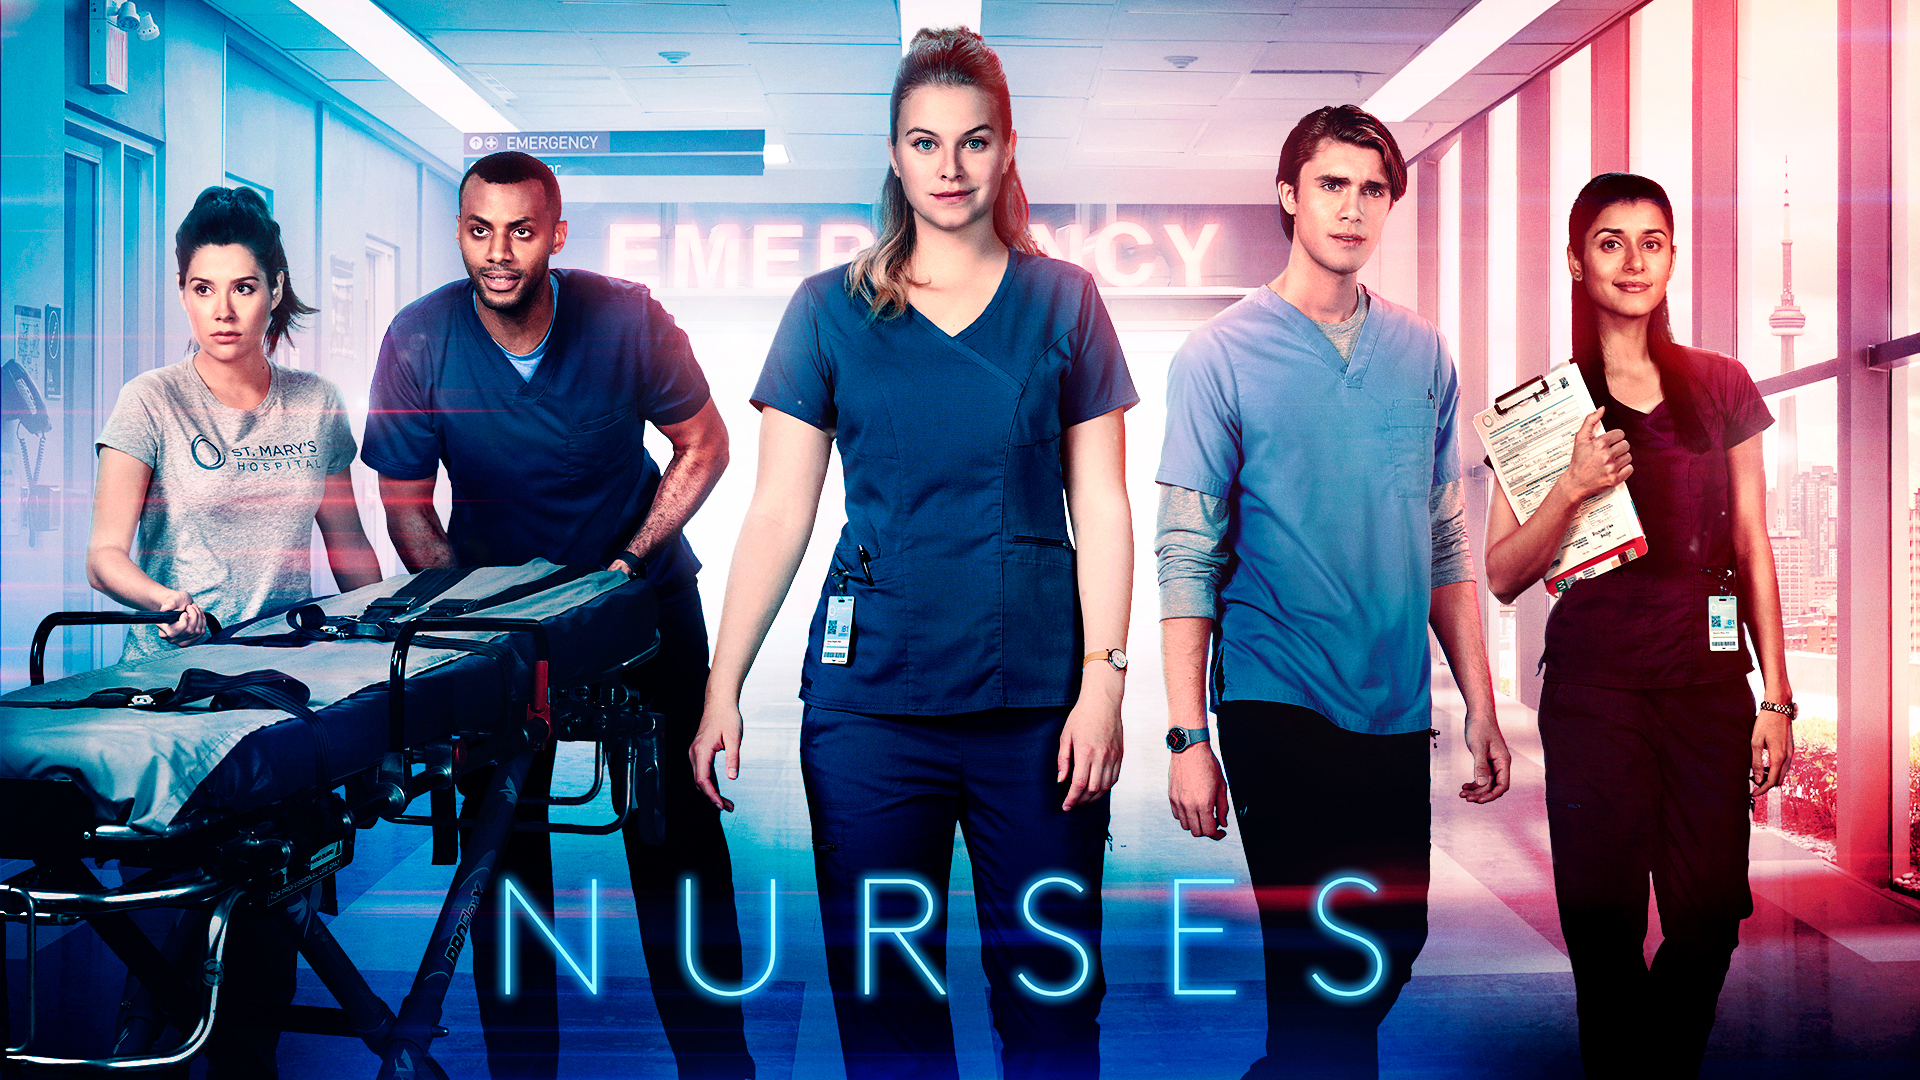 ©2021 Nurses Series Season 1 Inc.